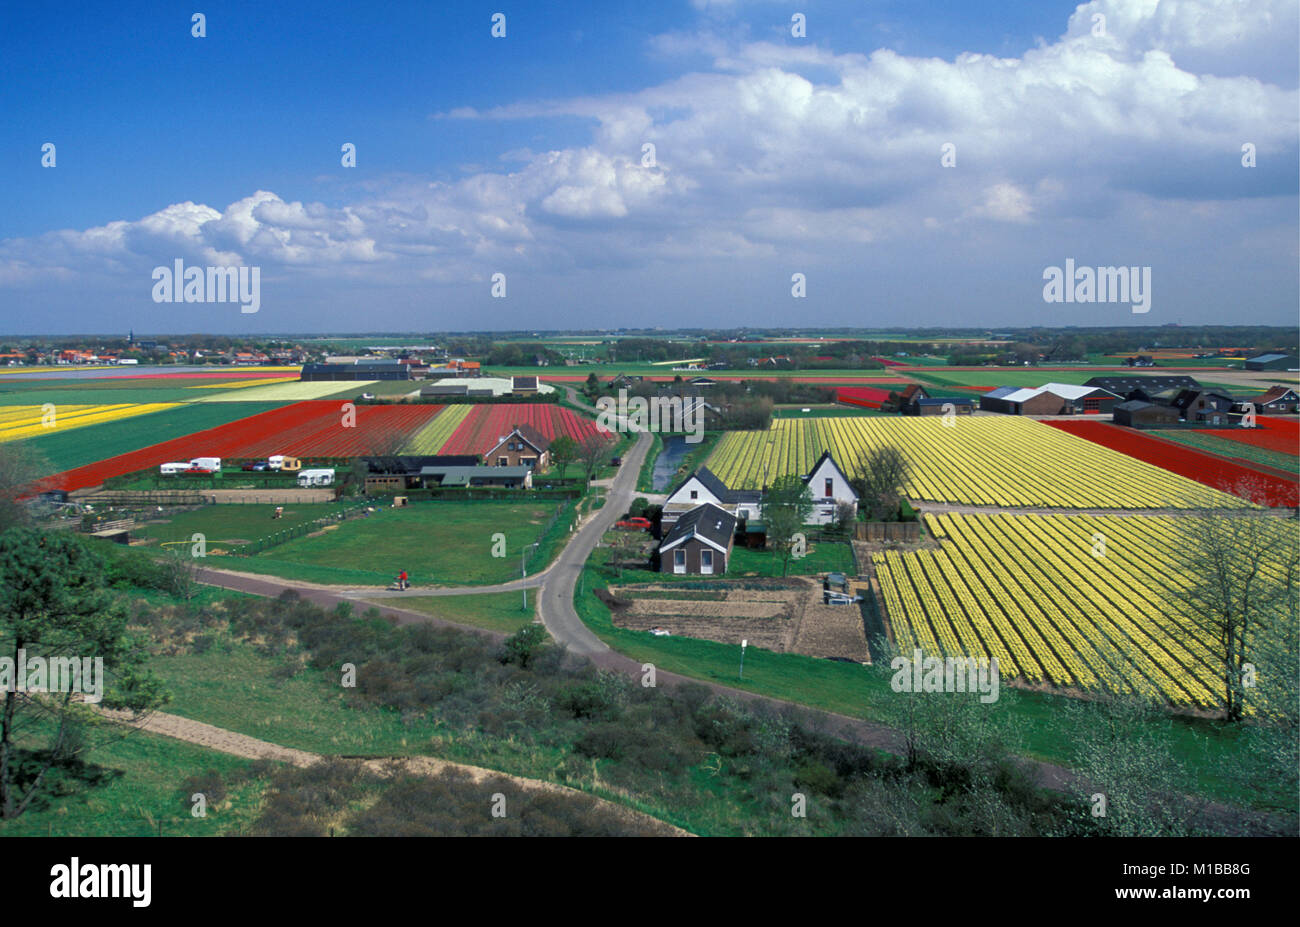 The Netherlands. Egmond-Binnen. Tulip fields. Stock Photo